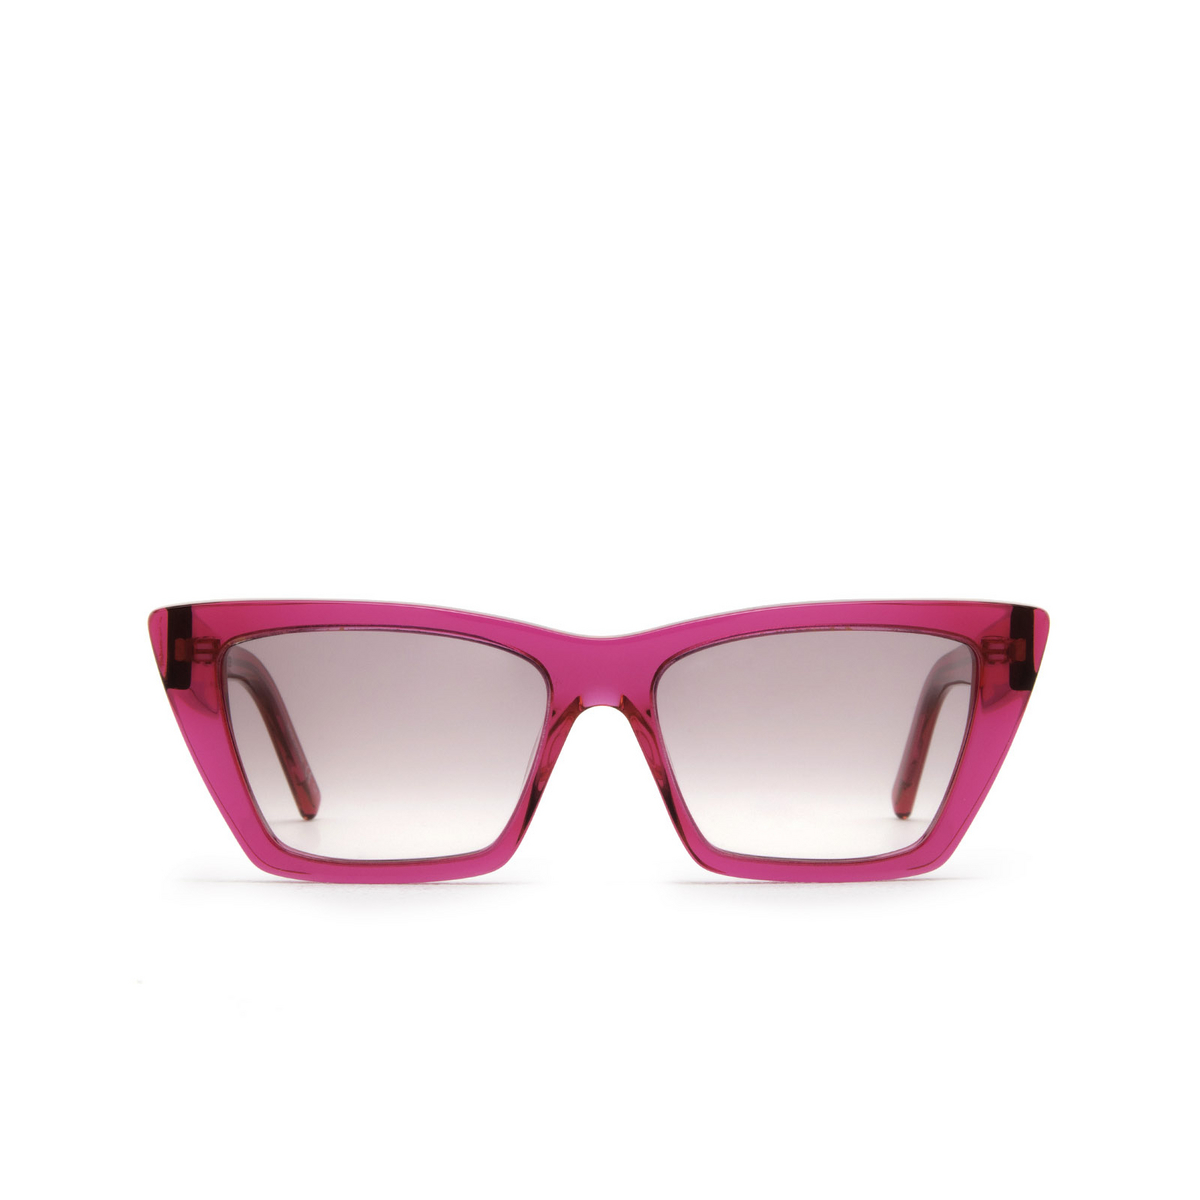 Saint Laurent® Cat-eye Sunglasses: Mica SL 276 color Pink 026 - front view.